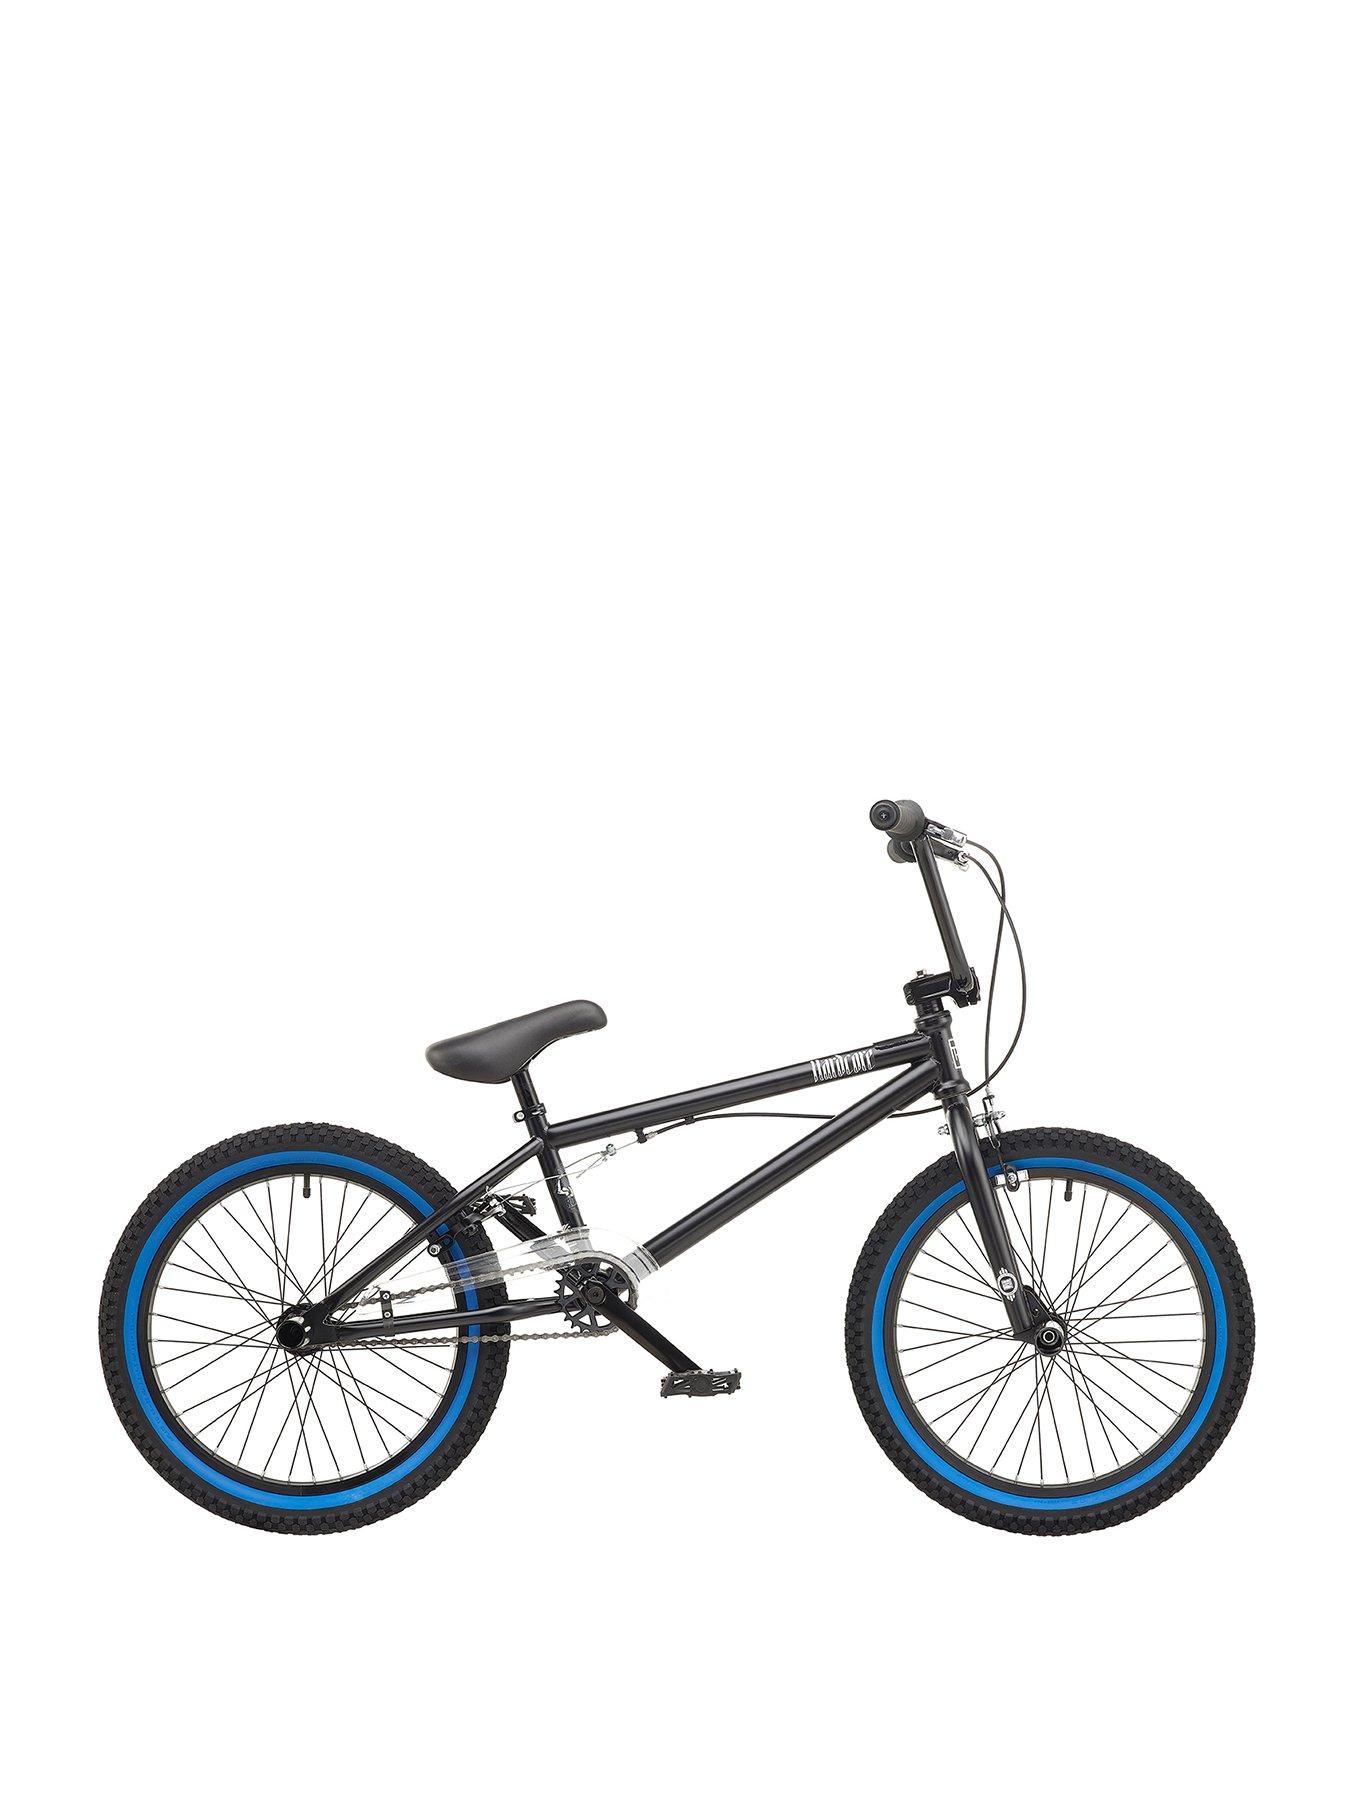 20 inch boy's bmx bicycle